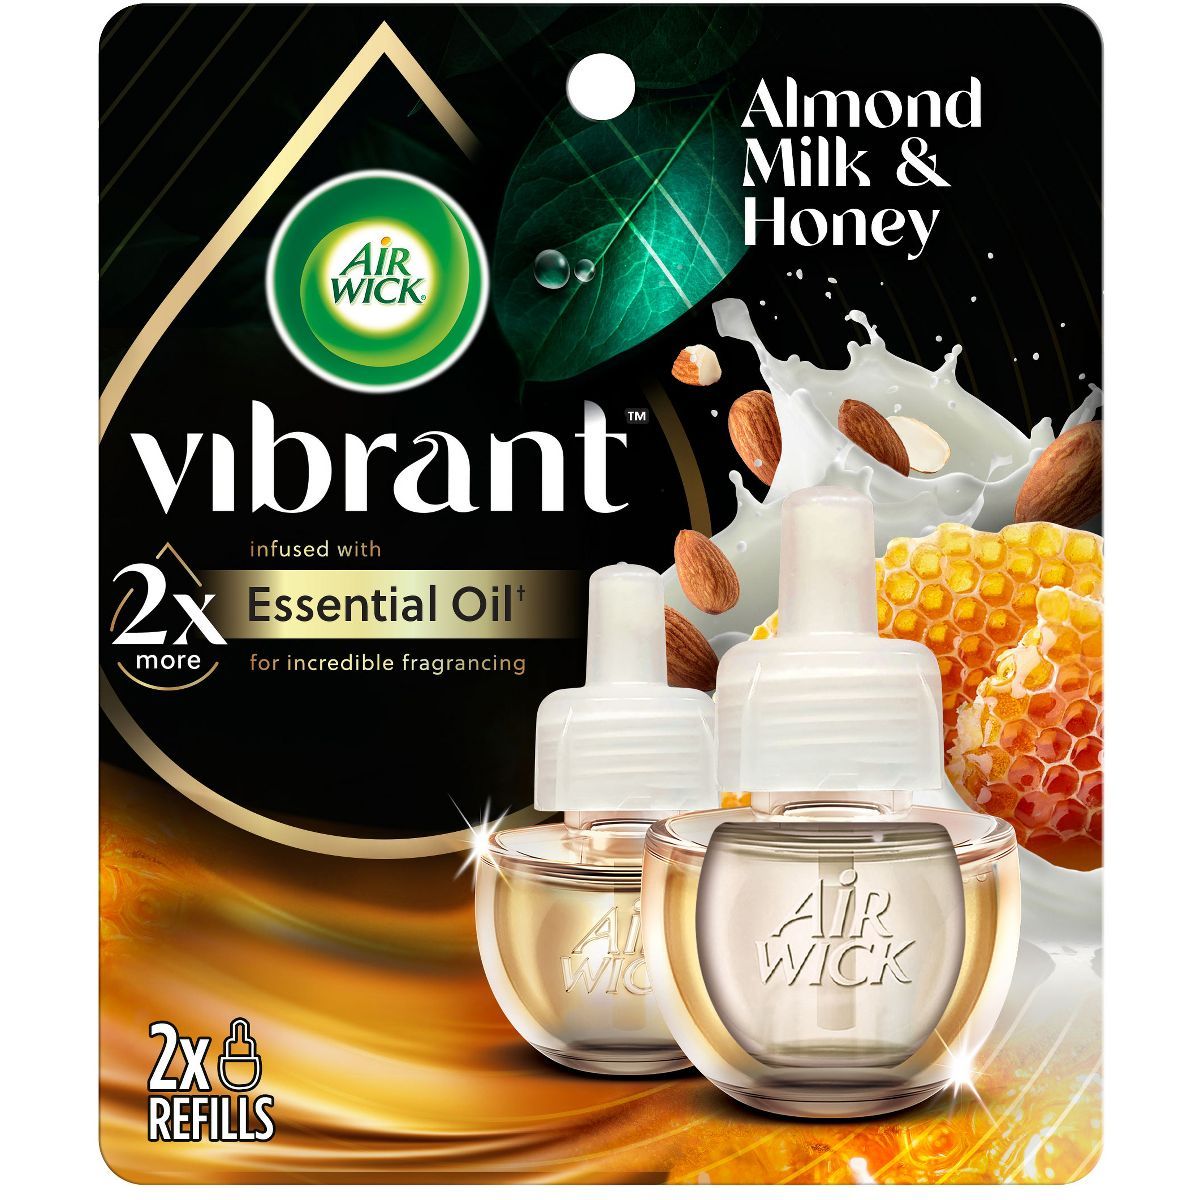 Air Wick Vibrant Scented Oil Air Freshener Refill - Almond Milk & Honey - 1.34 fl oz/2pk | Target